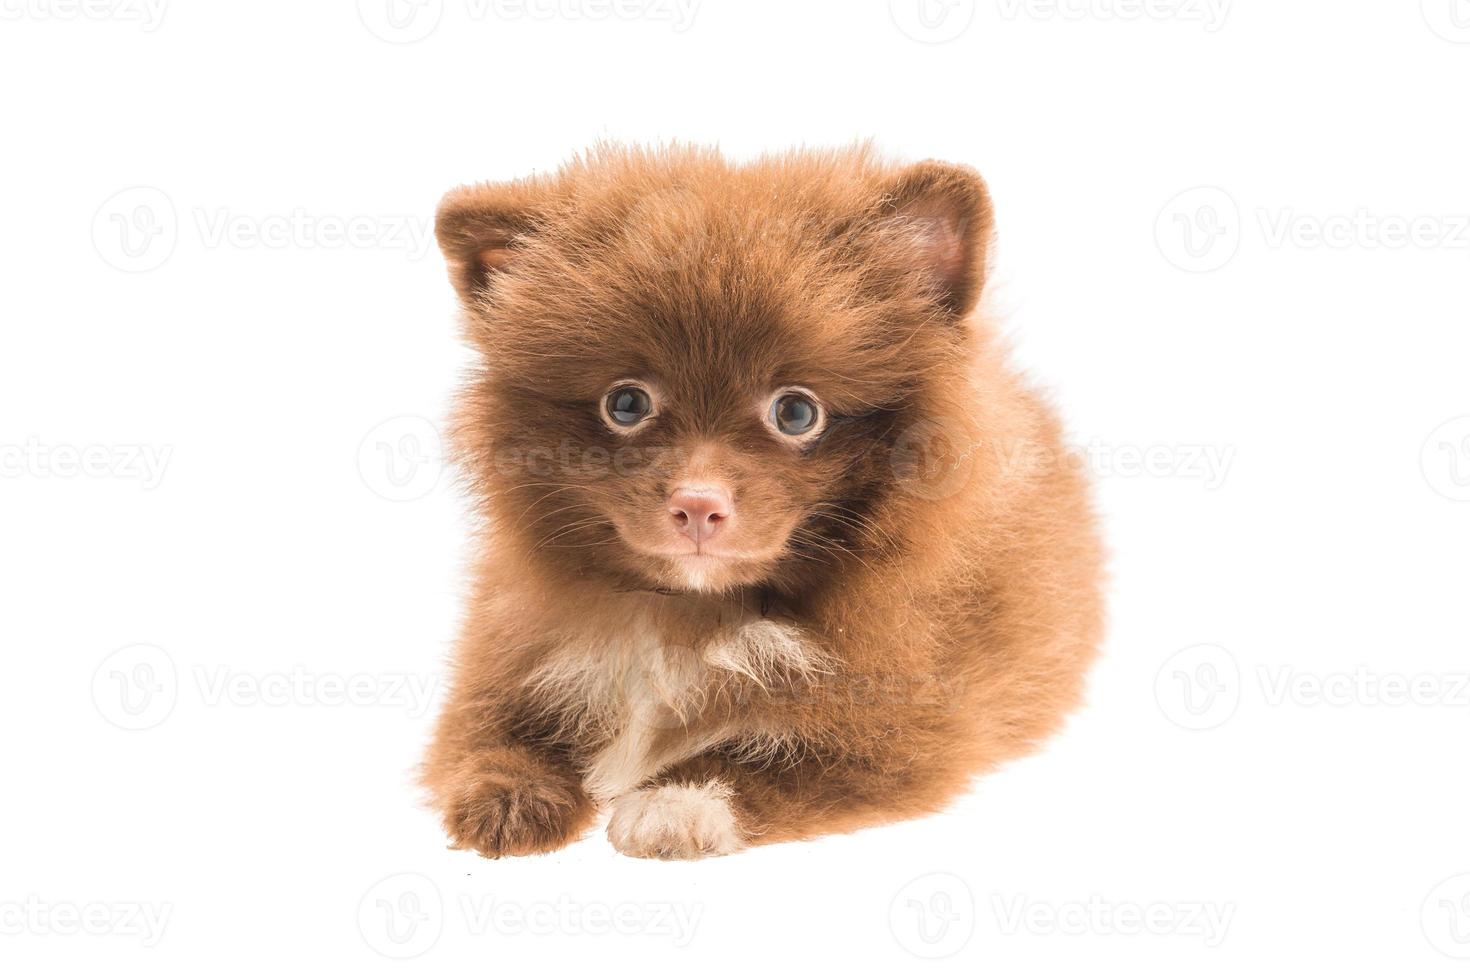 cucciolo di spitz di Pomerania su sfondo bianco foto